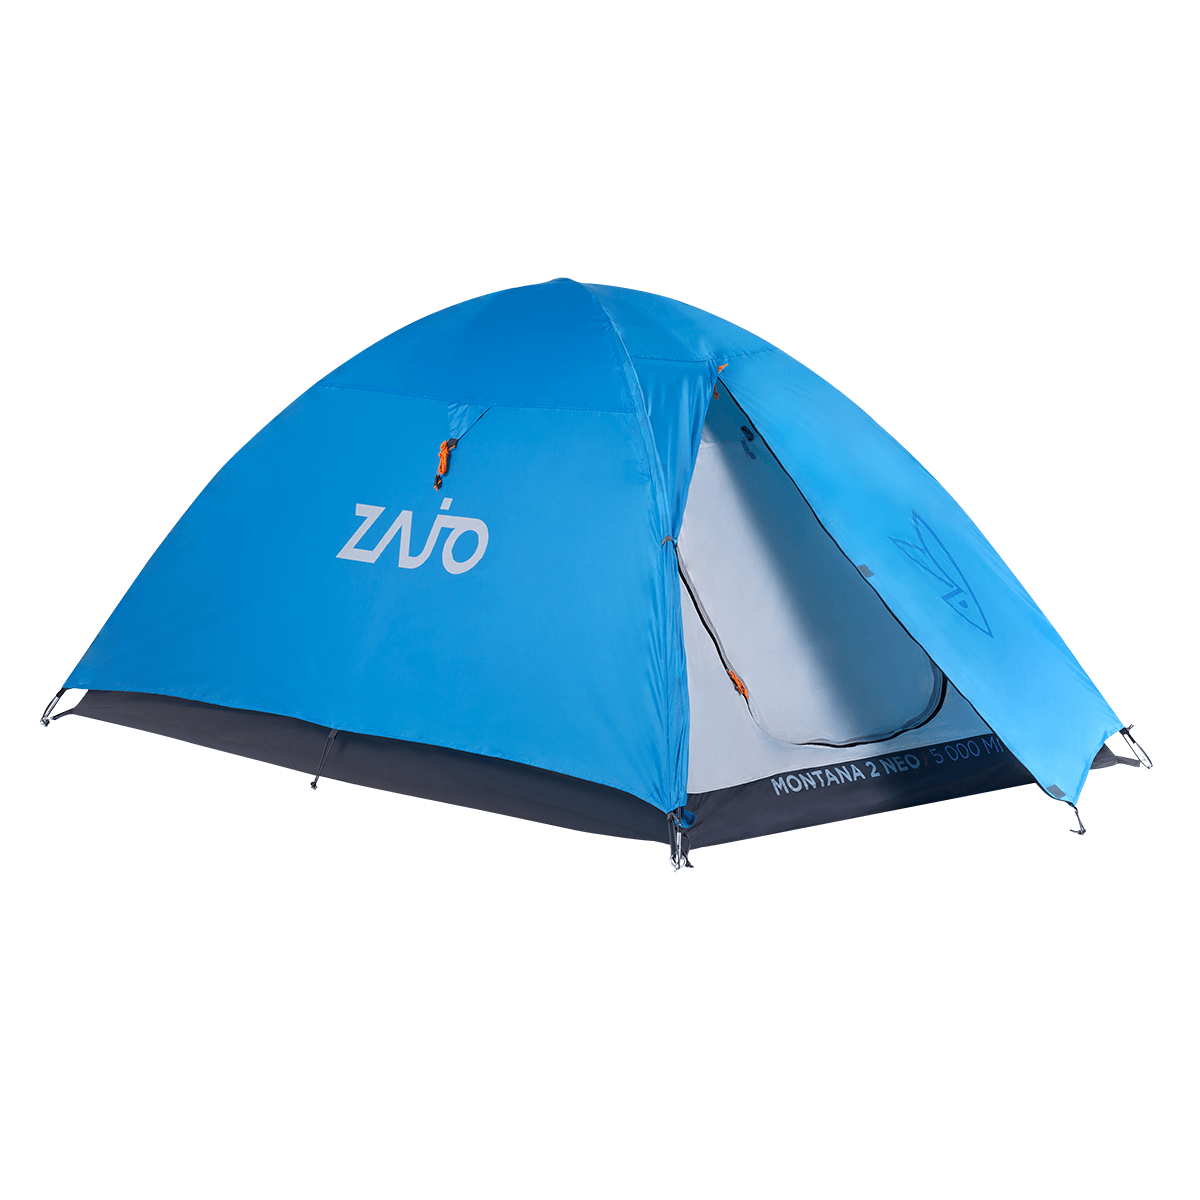 Stany Zajo Montana 2 Tent